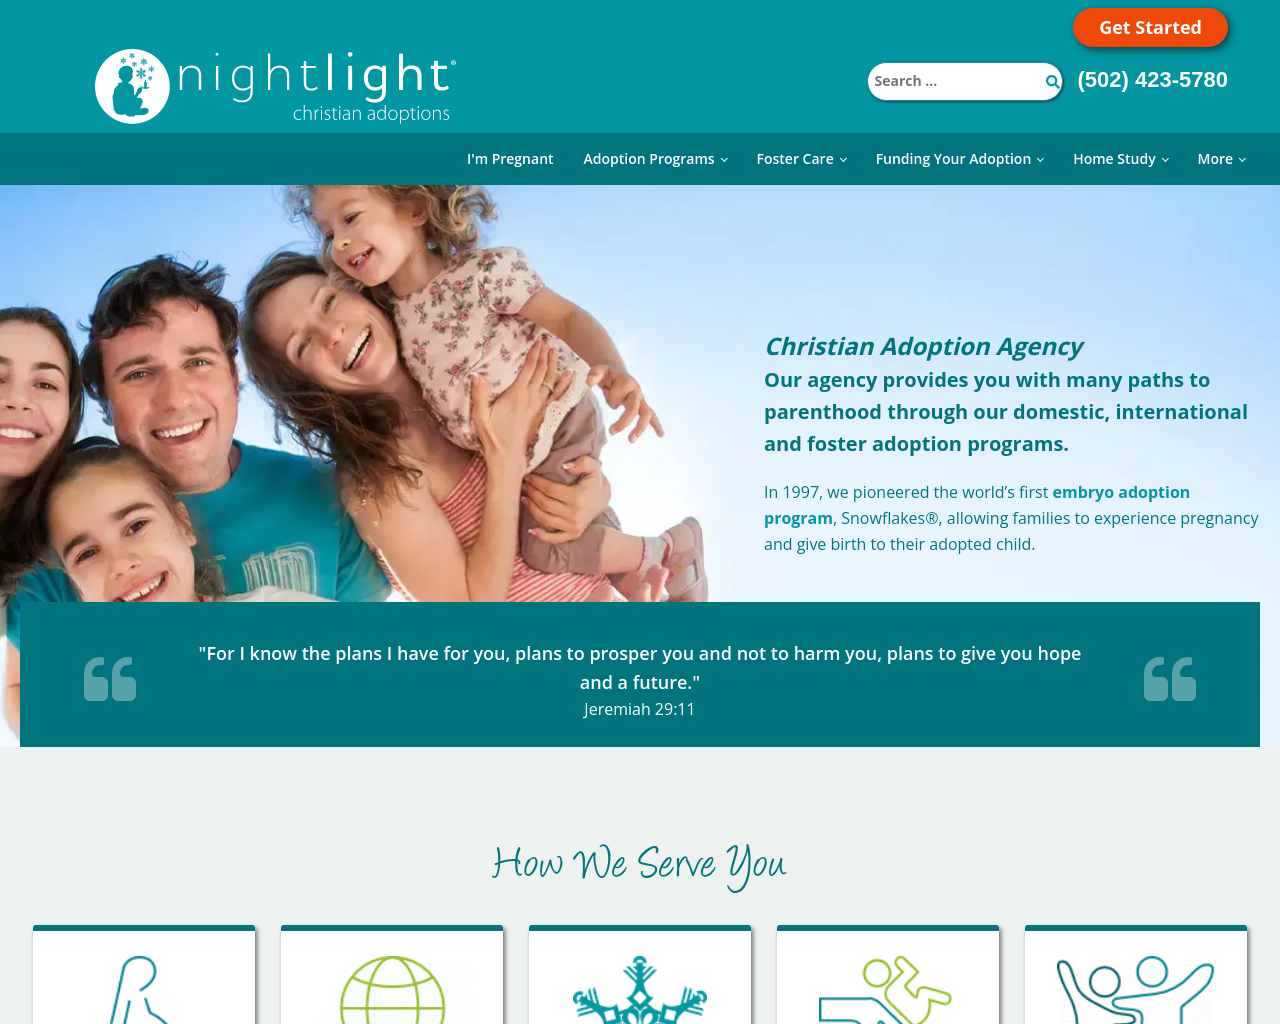 nightlight.org